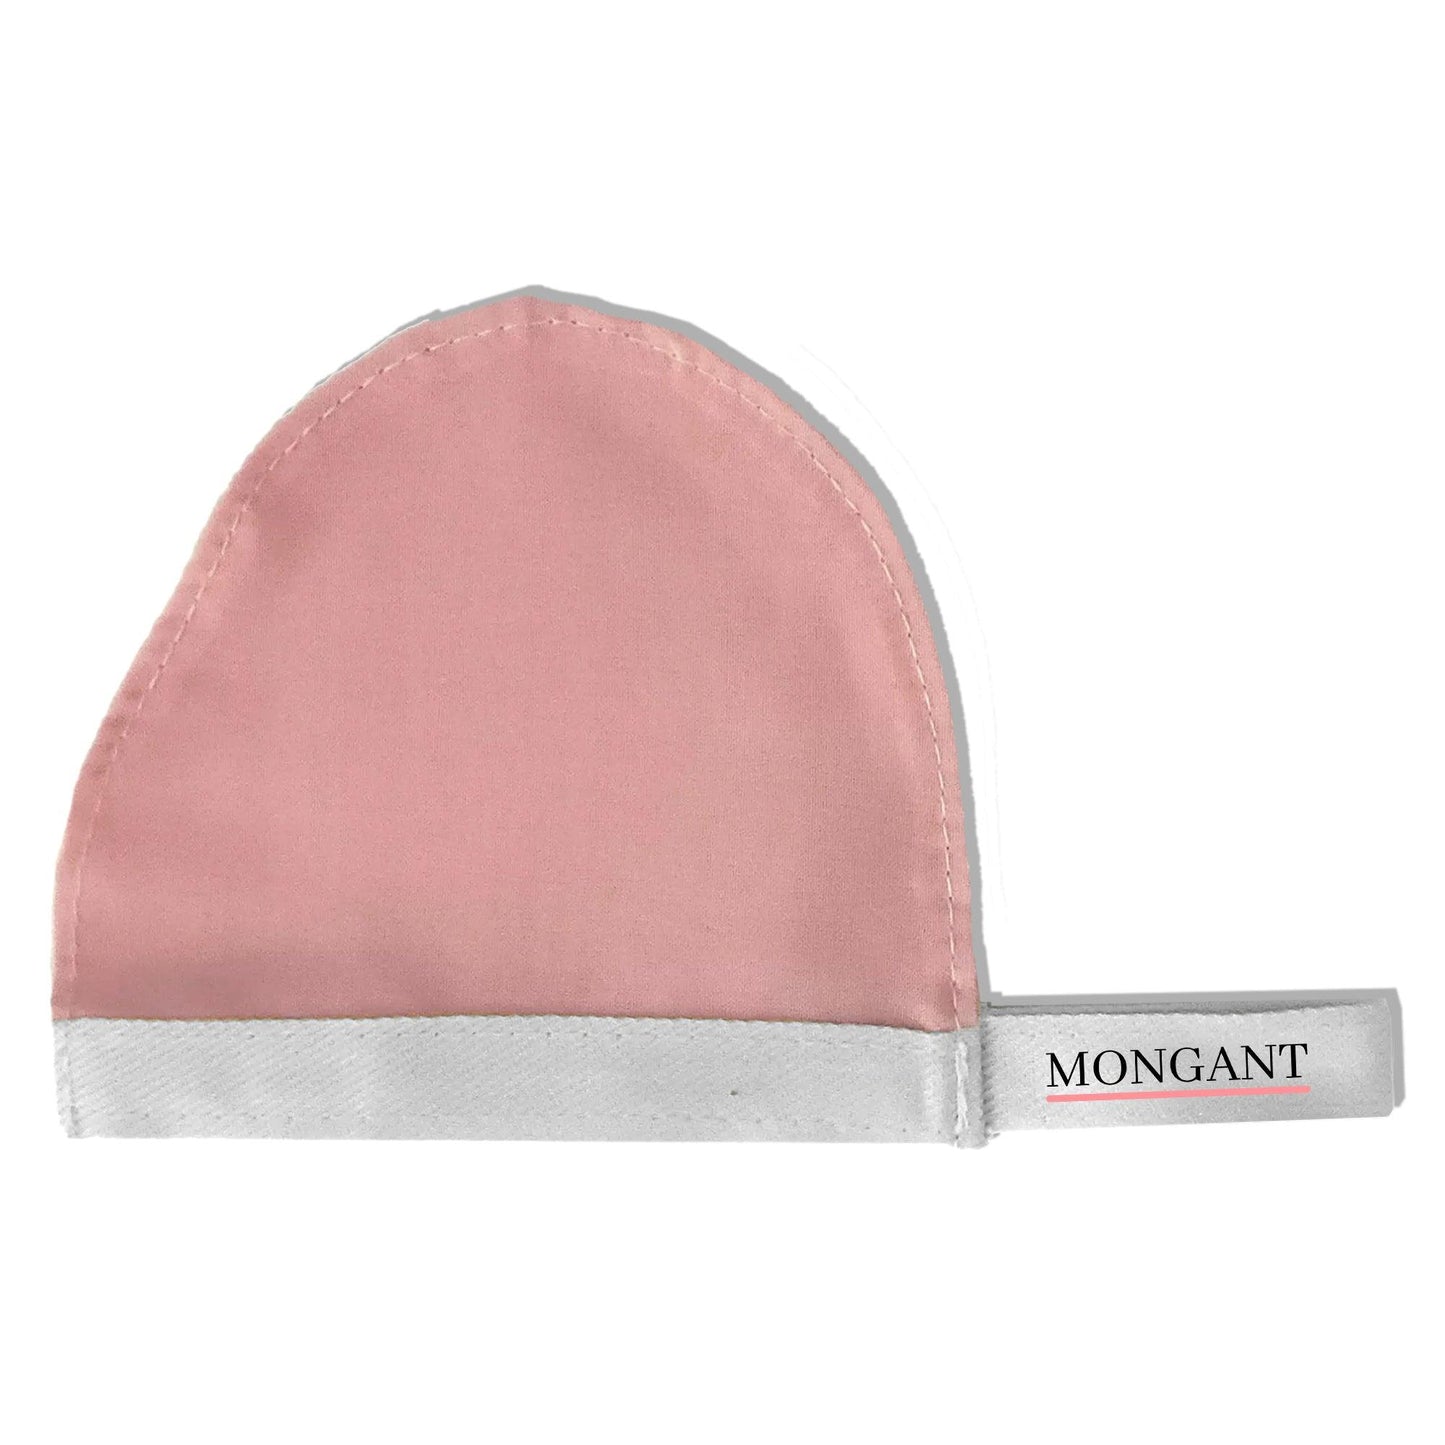 Mongant mini: Face scrubber - Mongant